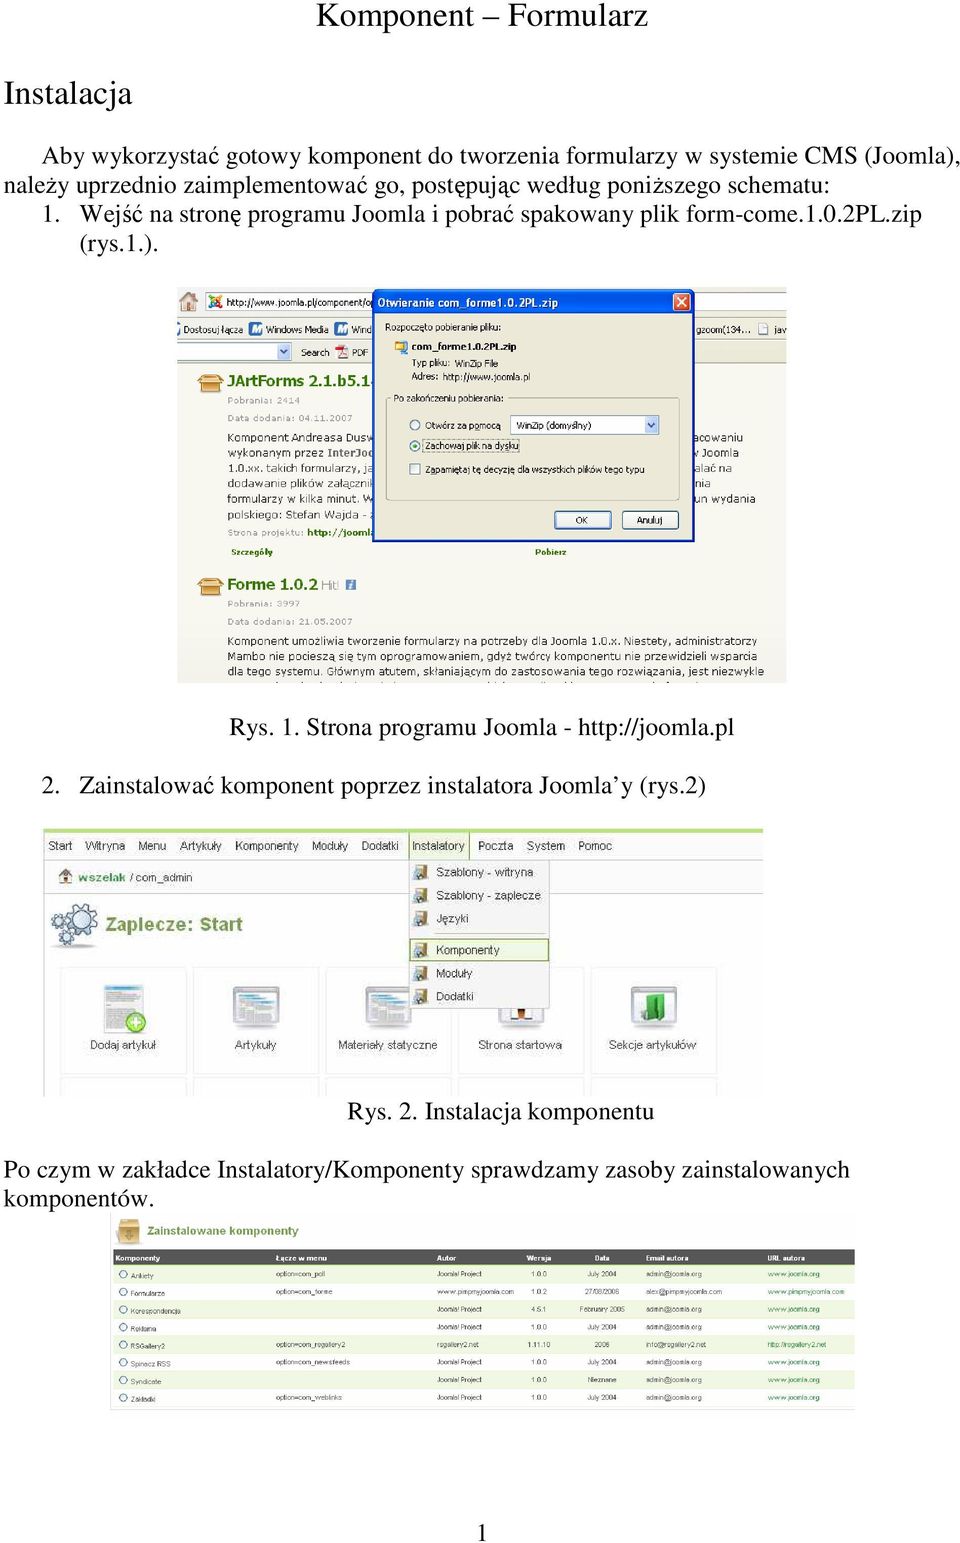 Wejść na stronę programu Joomla i pobrać spakowany plik form-come.1.0.2pl.zip (rys.1.). Rys. 1.